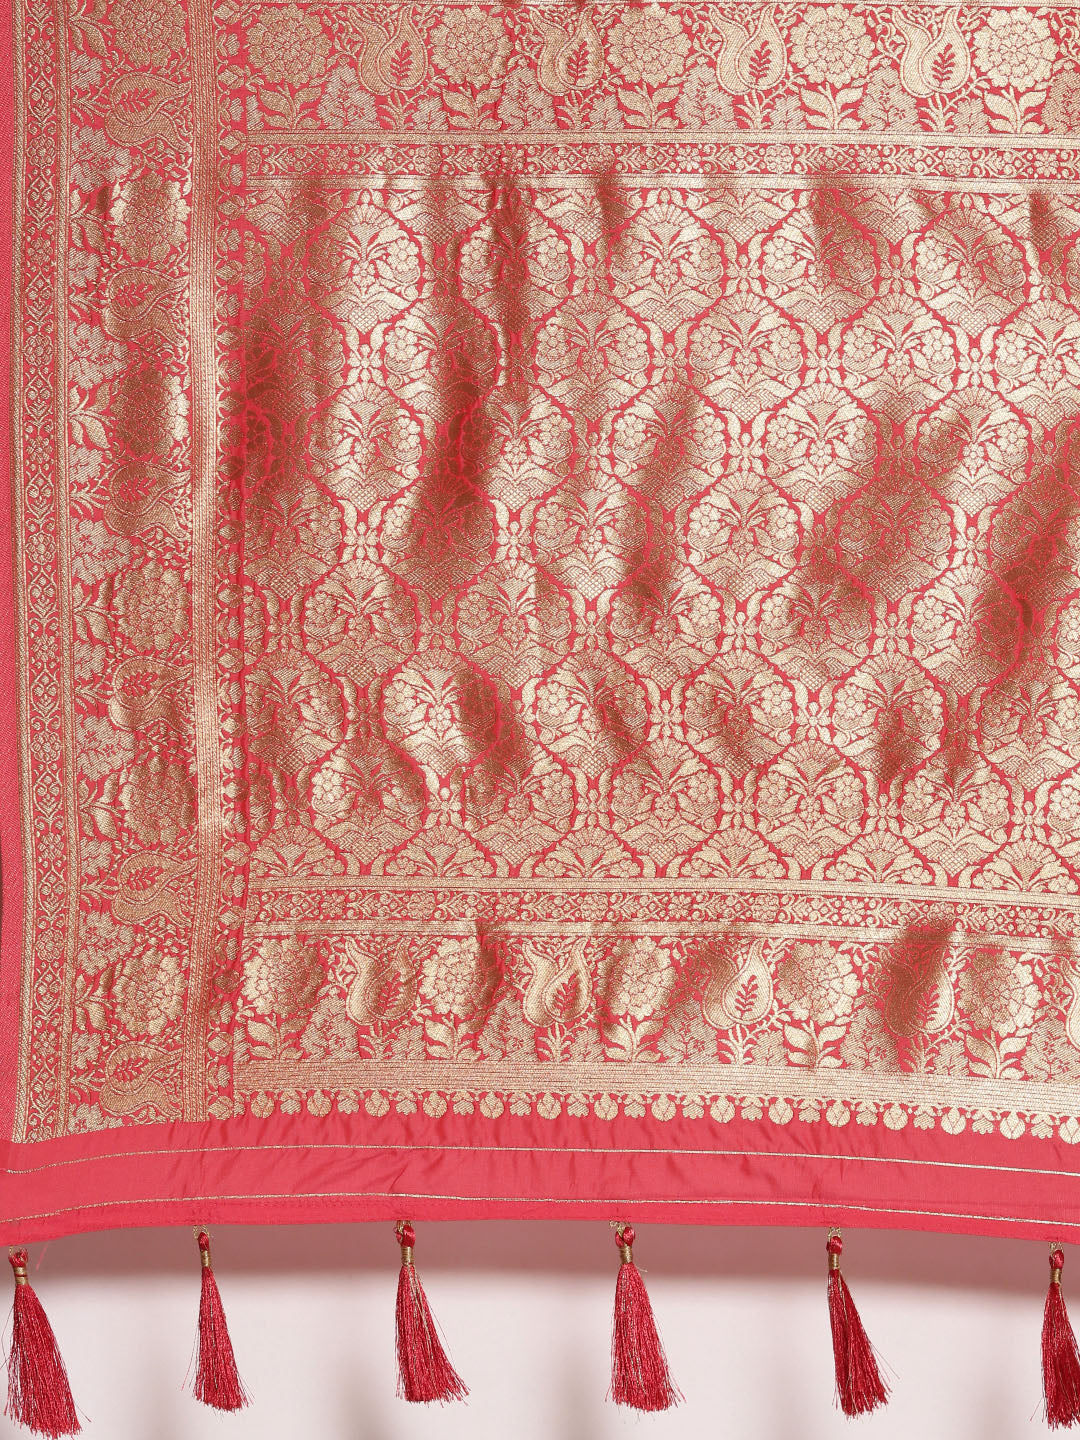 Women's Red & Golden Satin Paisley Zari Woven Banarasi Saree - Royal Dwells